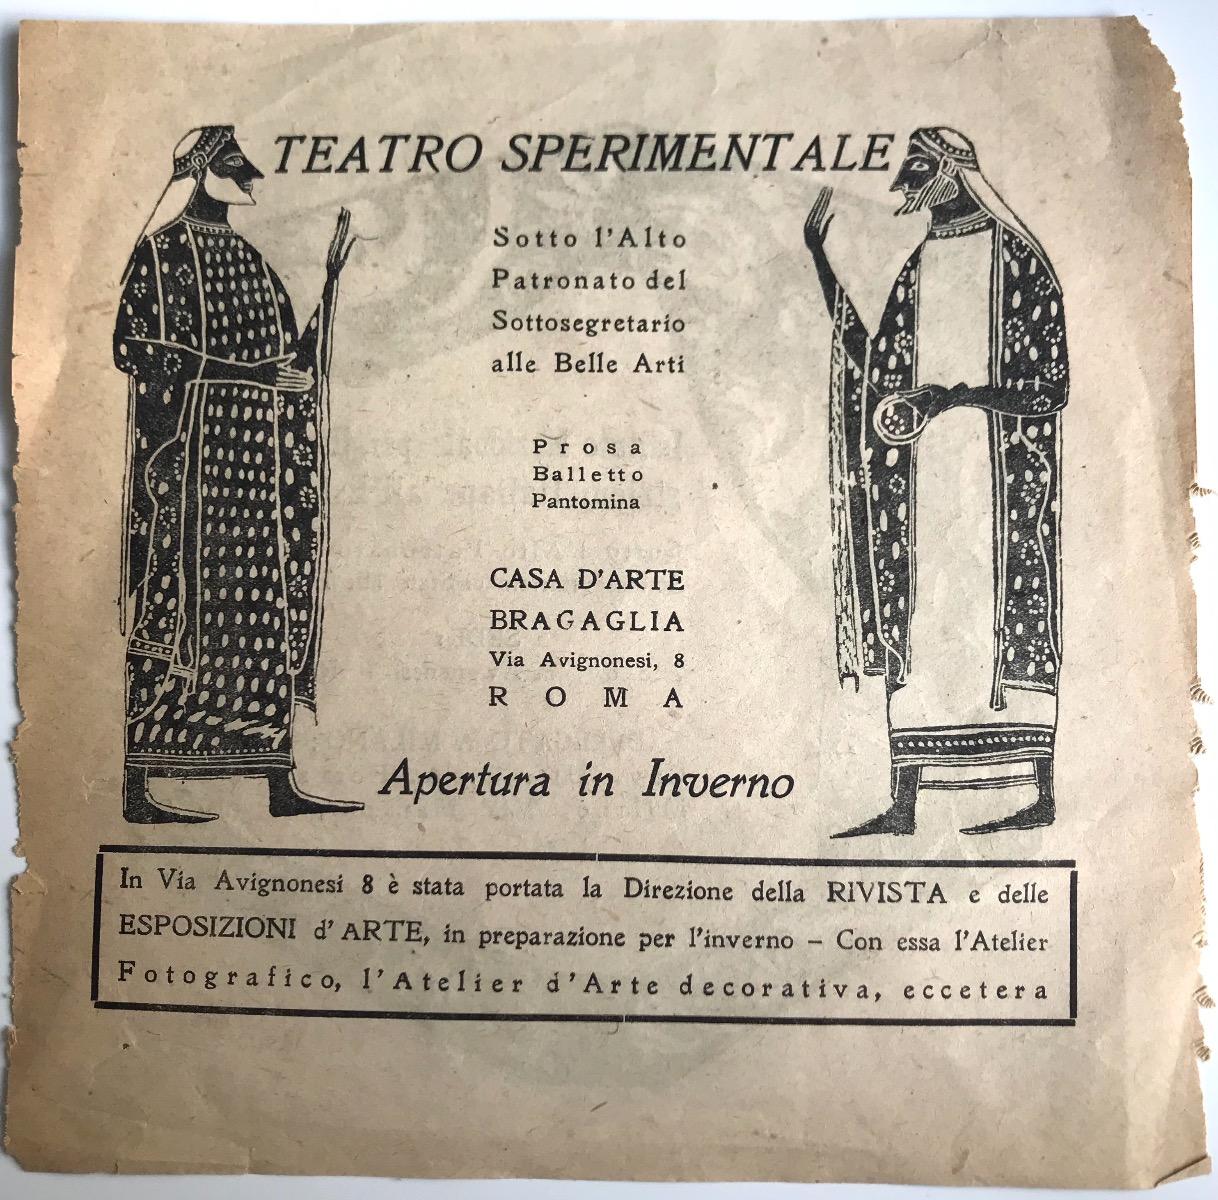 Publicité de théâtre expérimentale - Impression offset - 1920